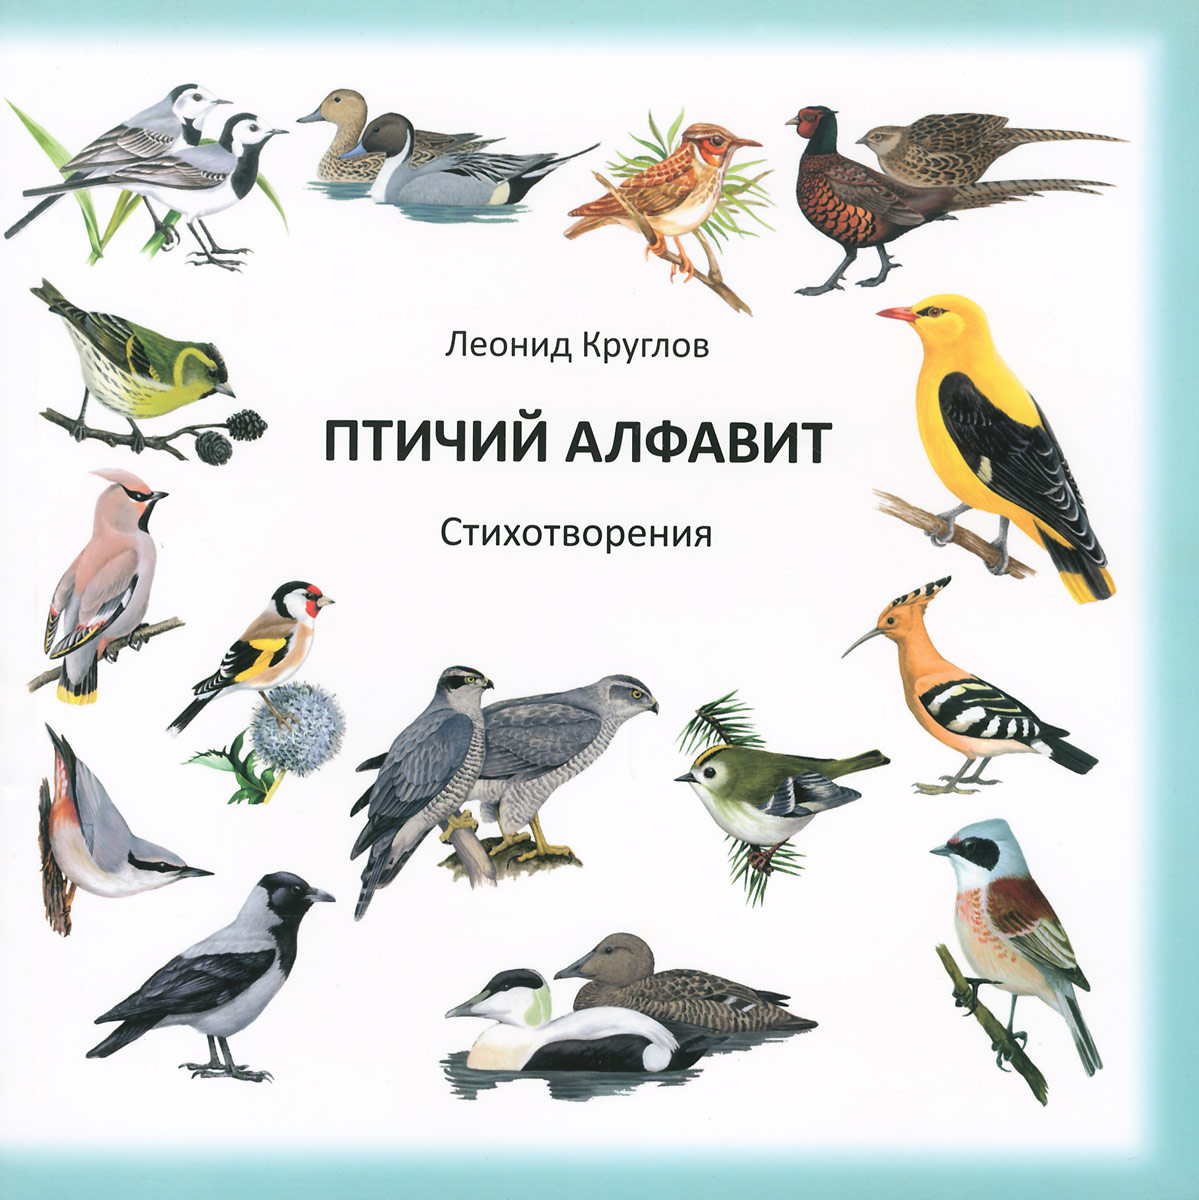 Л. В. Круглов - «Птичий алфавит: стихотворения. Круглов Л.В»